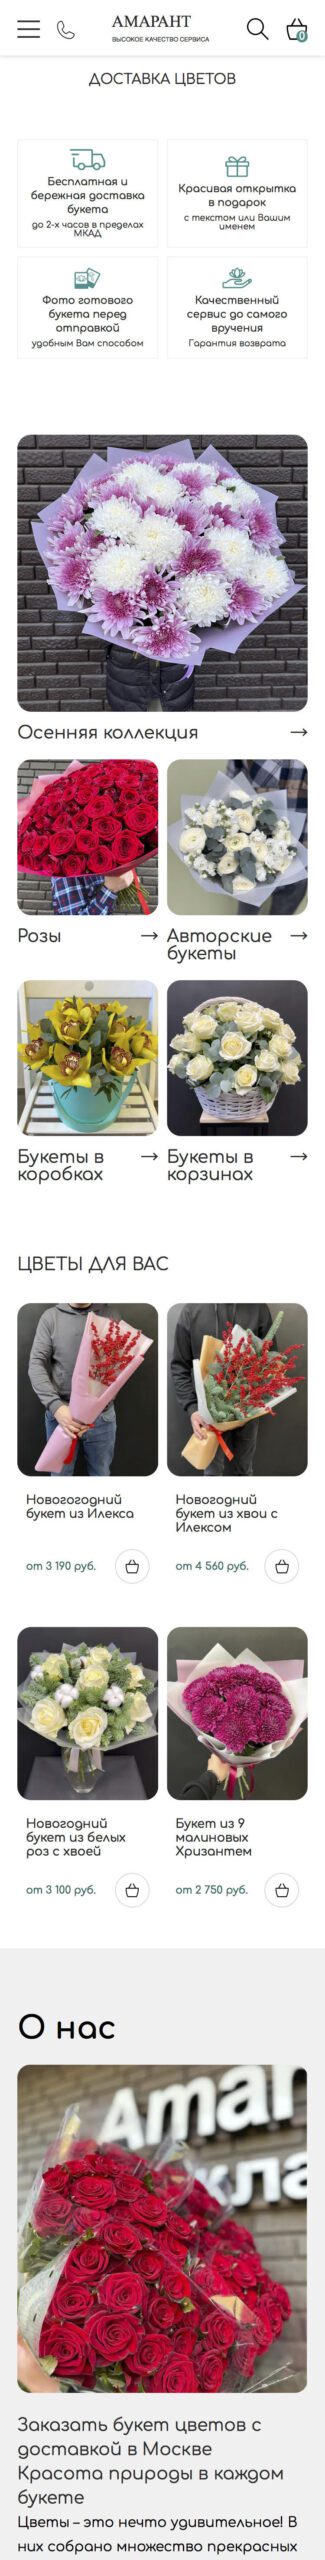 Редизайн Интернет-магазина по доставке букетов и настройка рекламной кампании в Яндекс.Директ - Главная страница мобильной версии